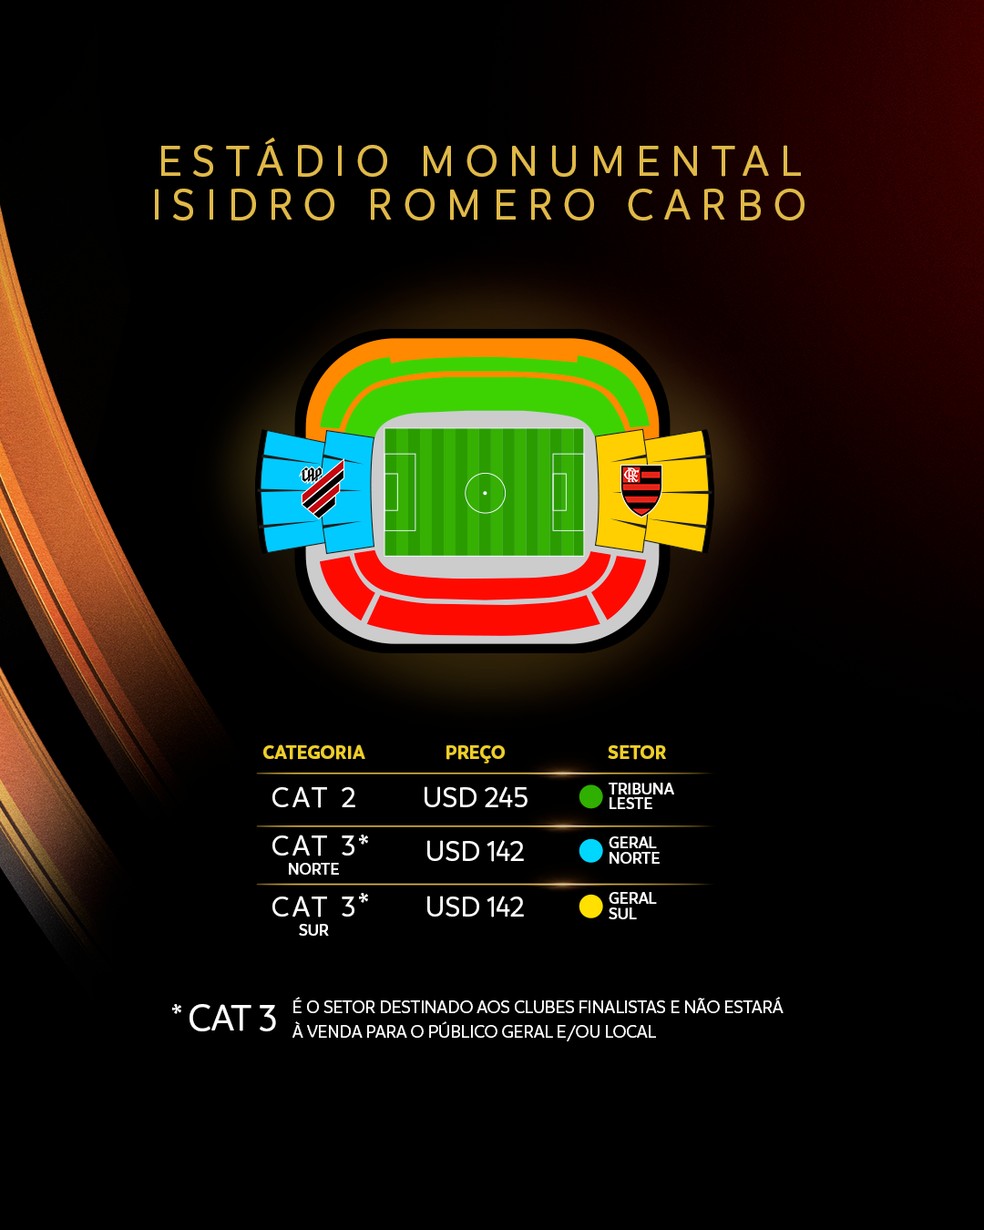 Preços e setores do Estádio Monumental Isidro Romero Carbo, palco da final da Libertadores — Foto: Divulgação/Conmebol